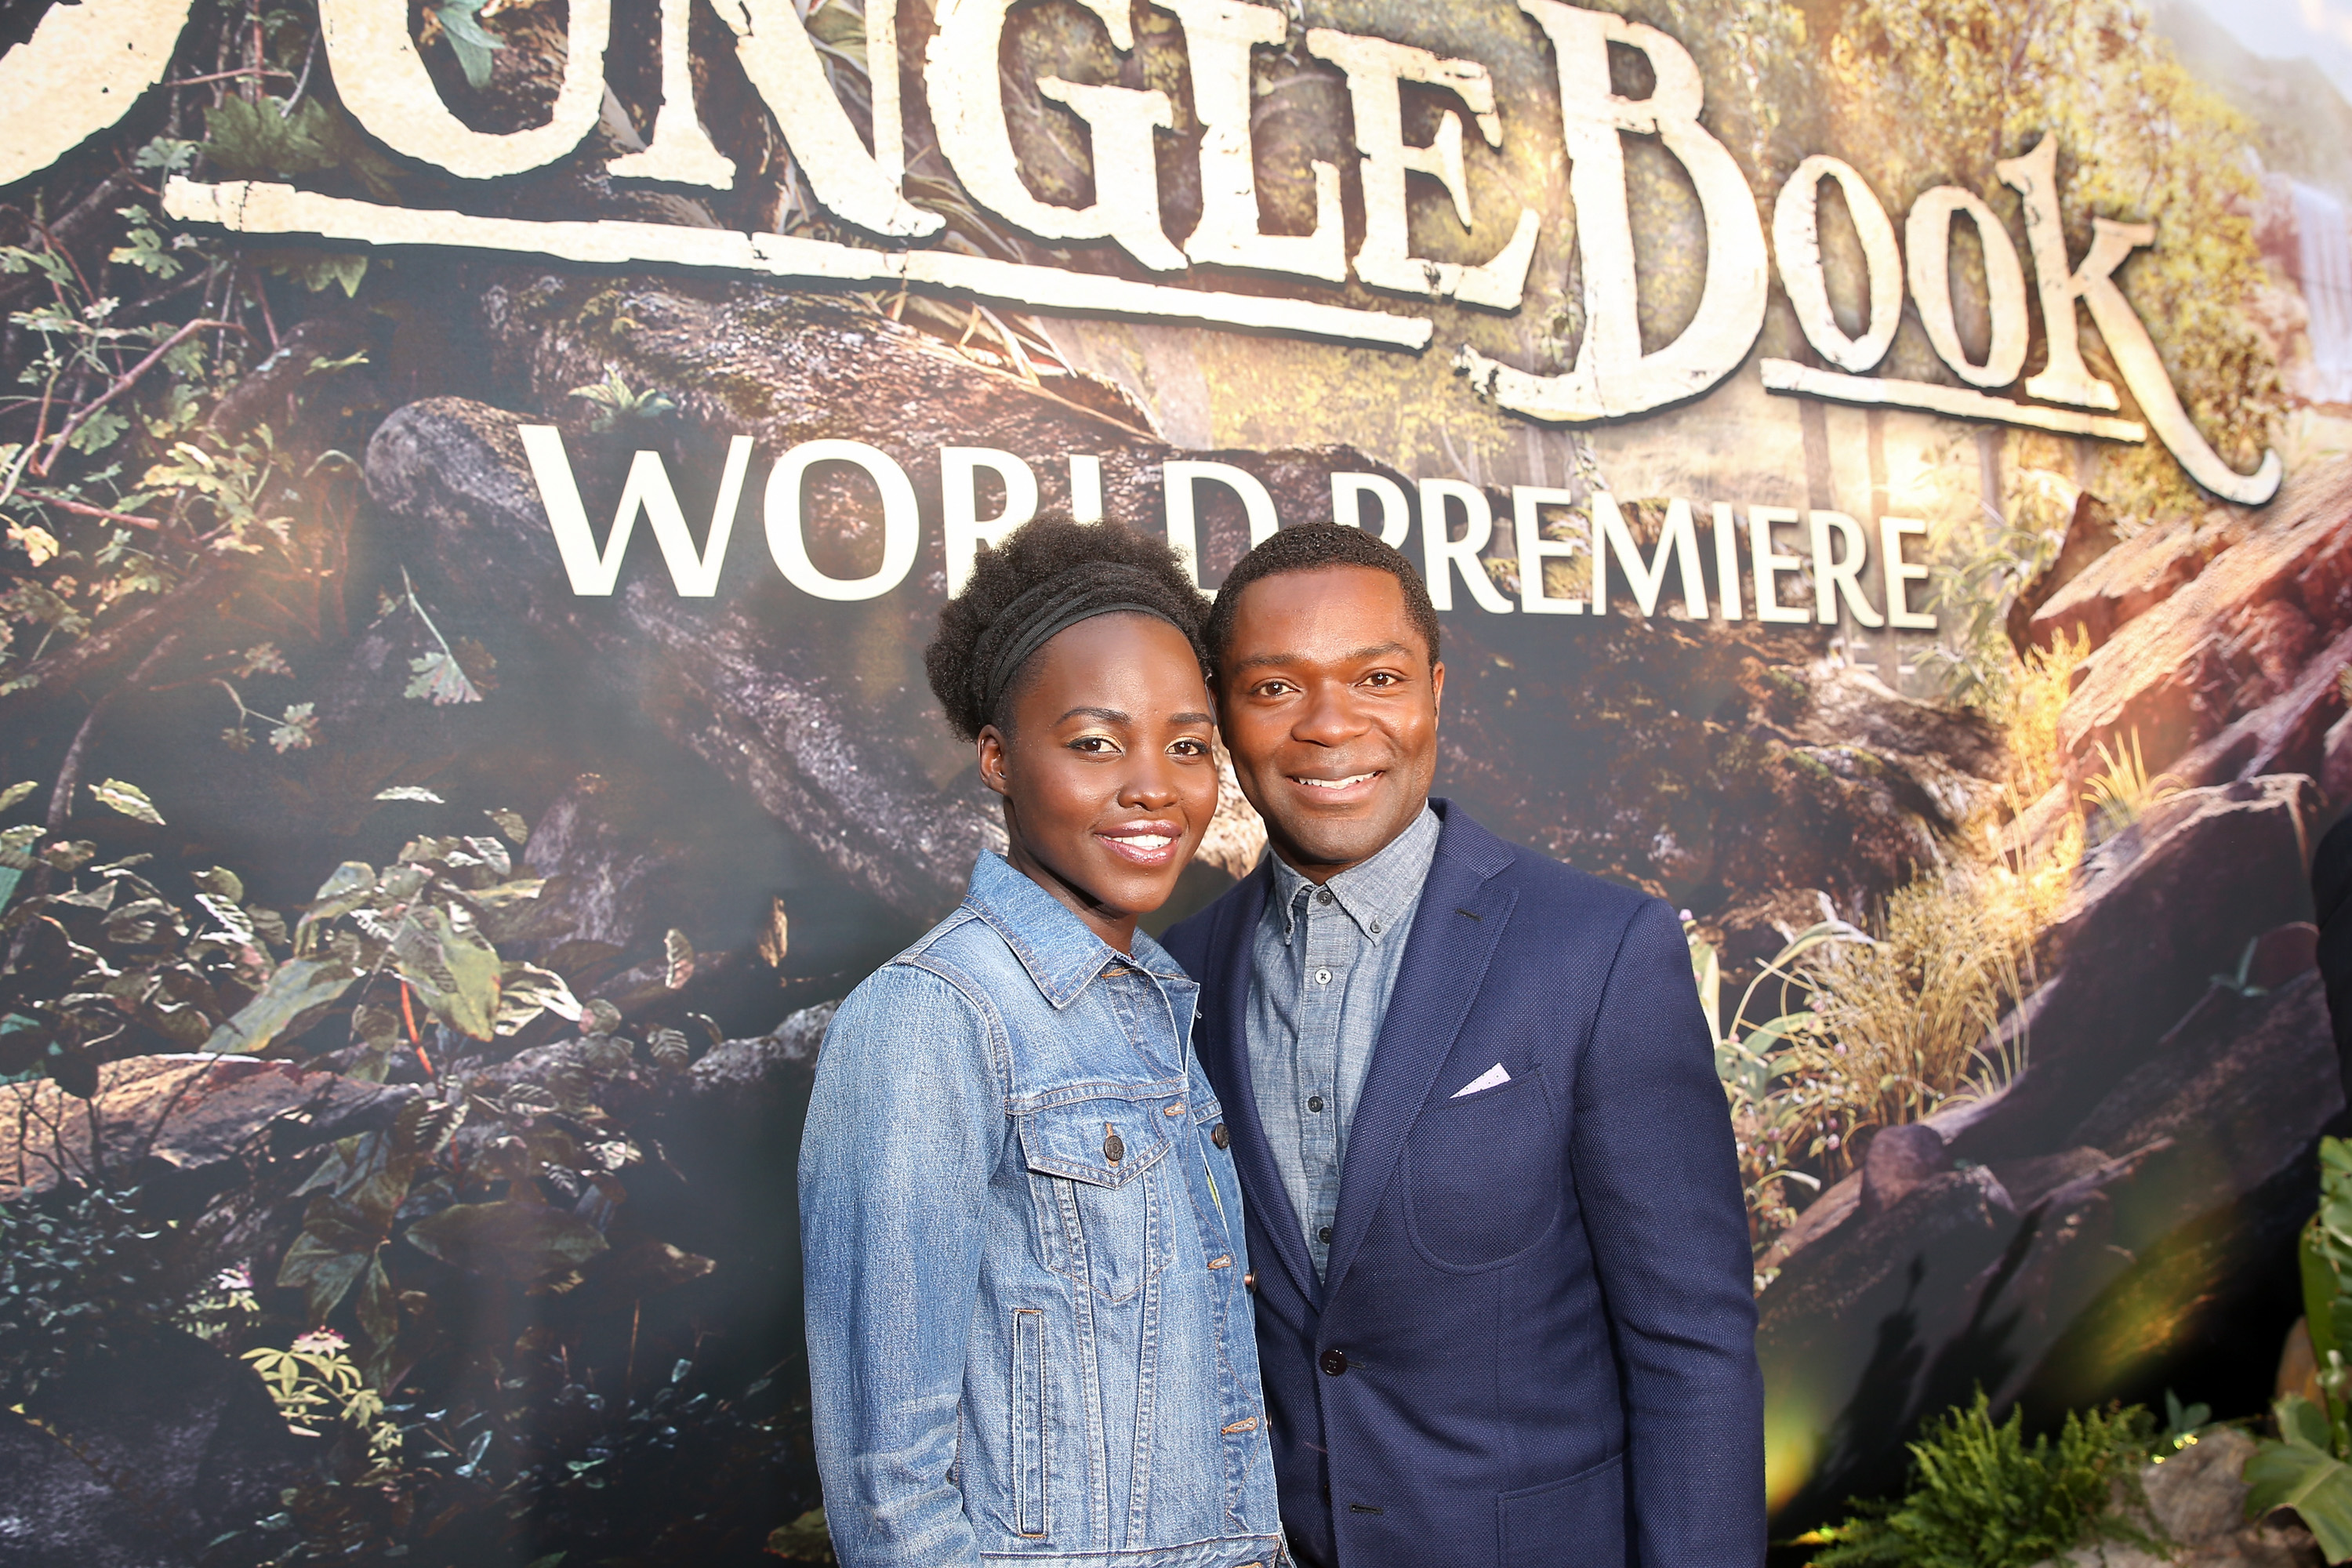 The Jungle Book premiere